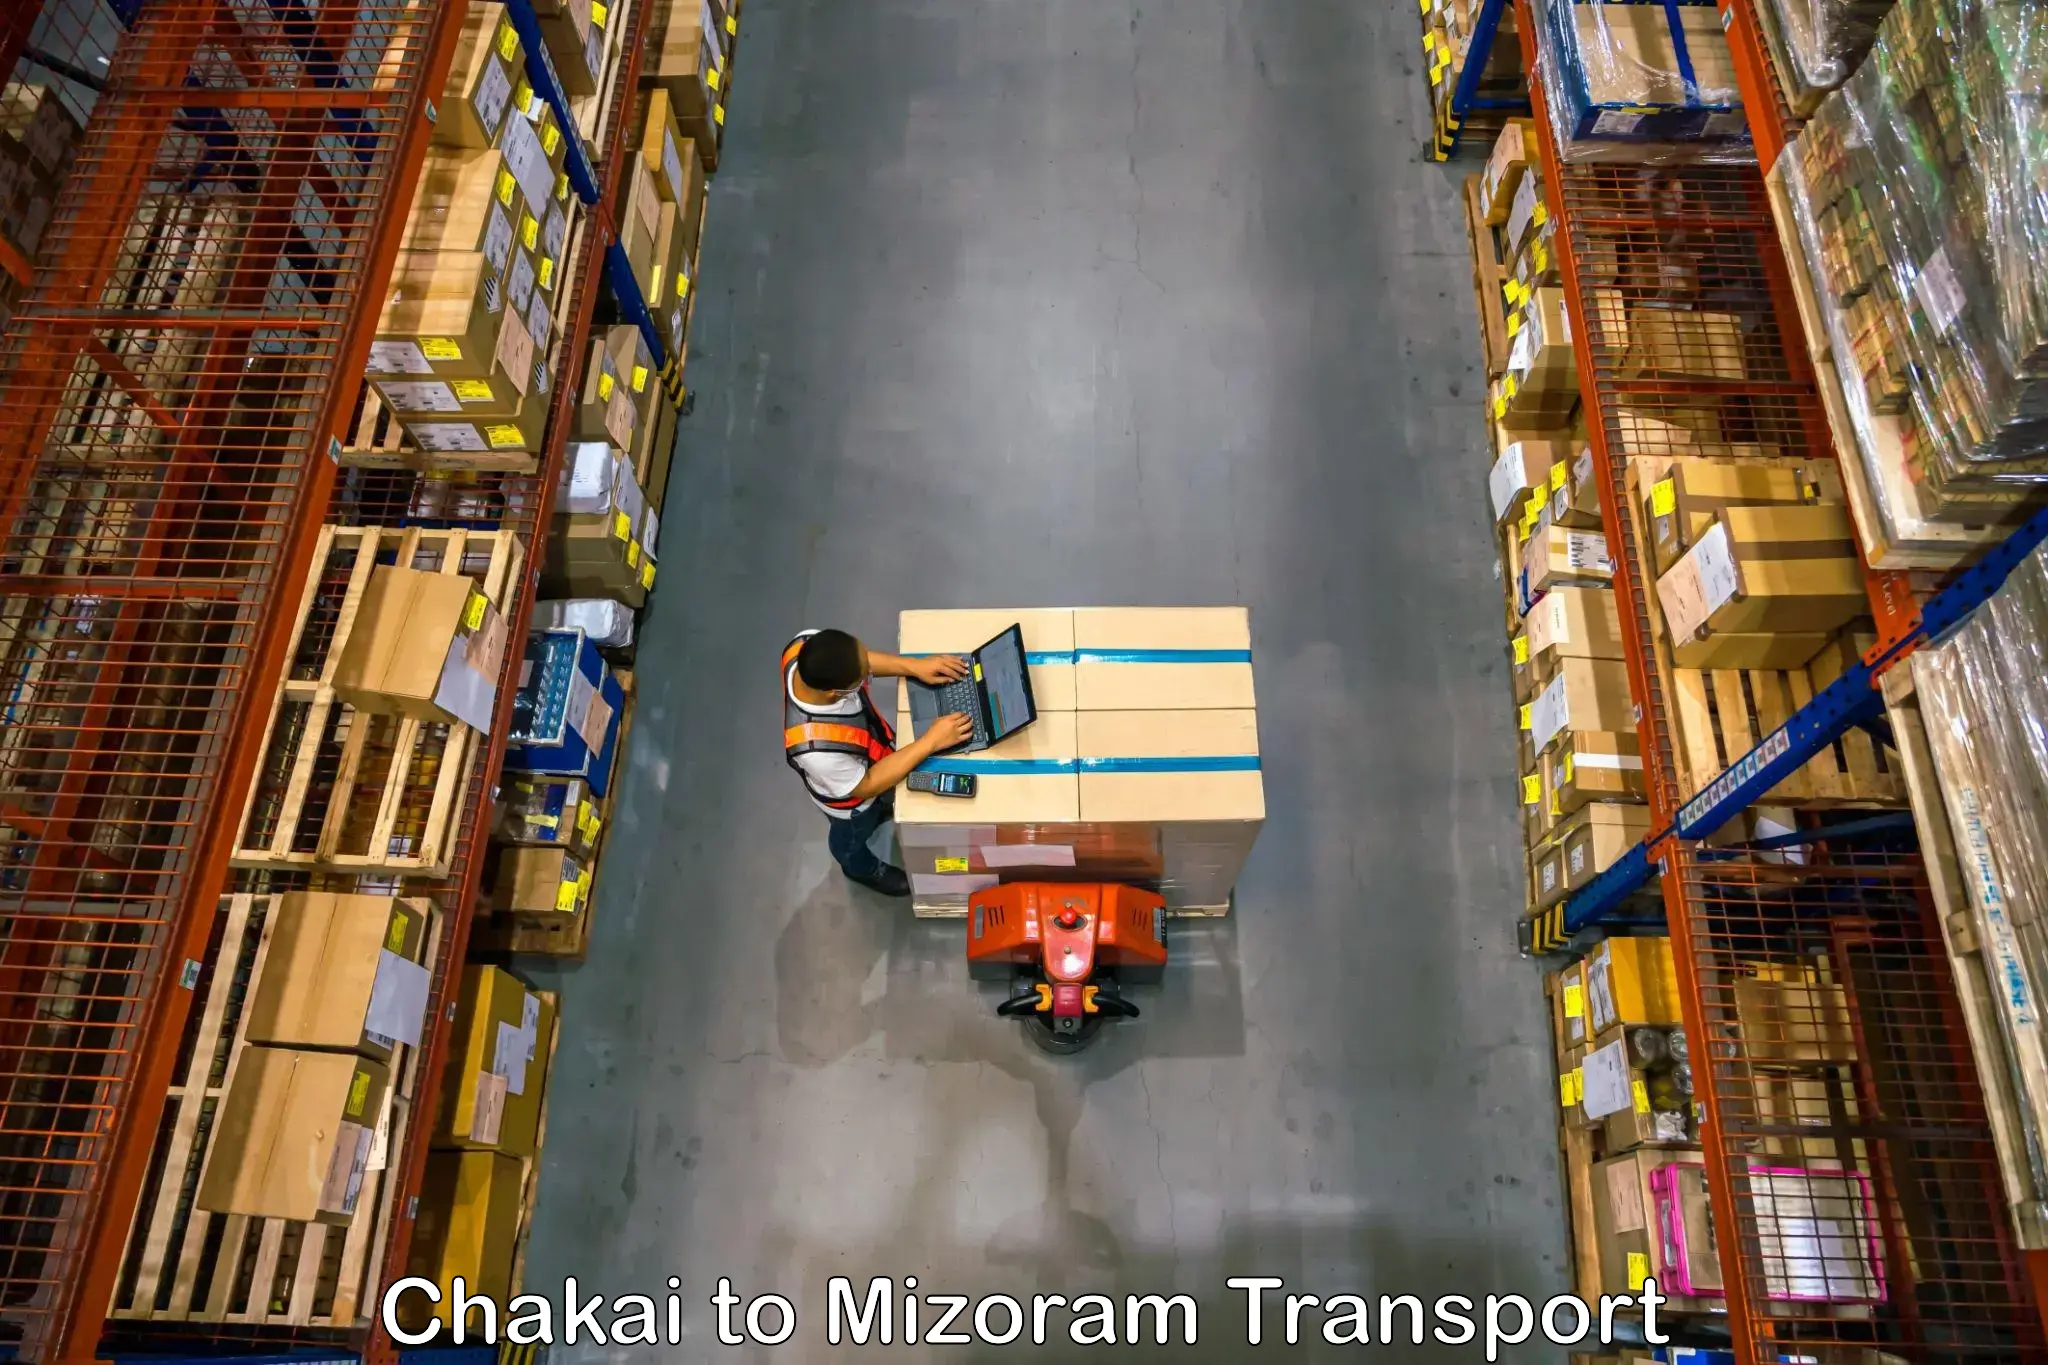 Intercity goods transport in Chakai to Mizoram